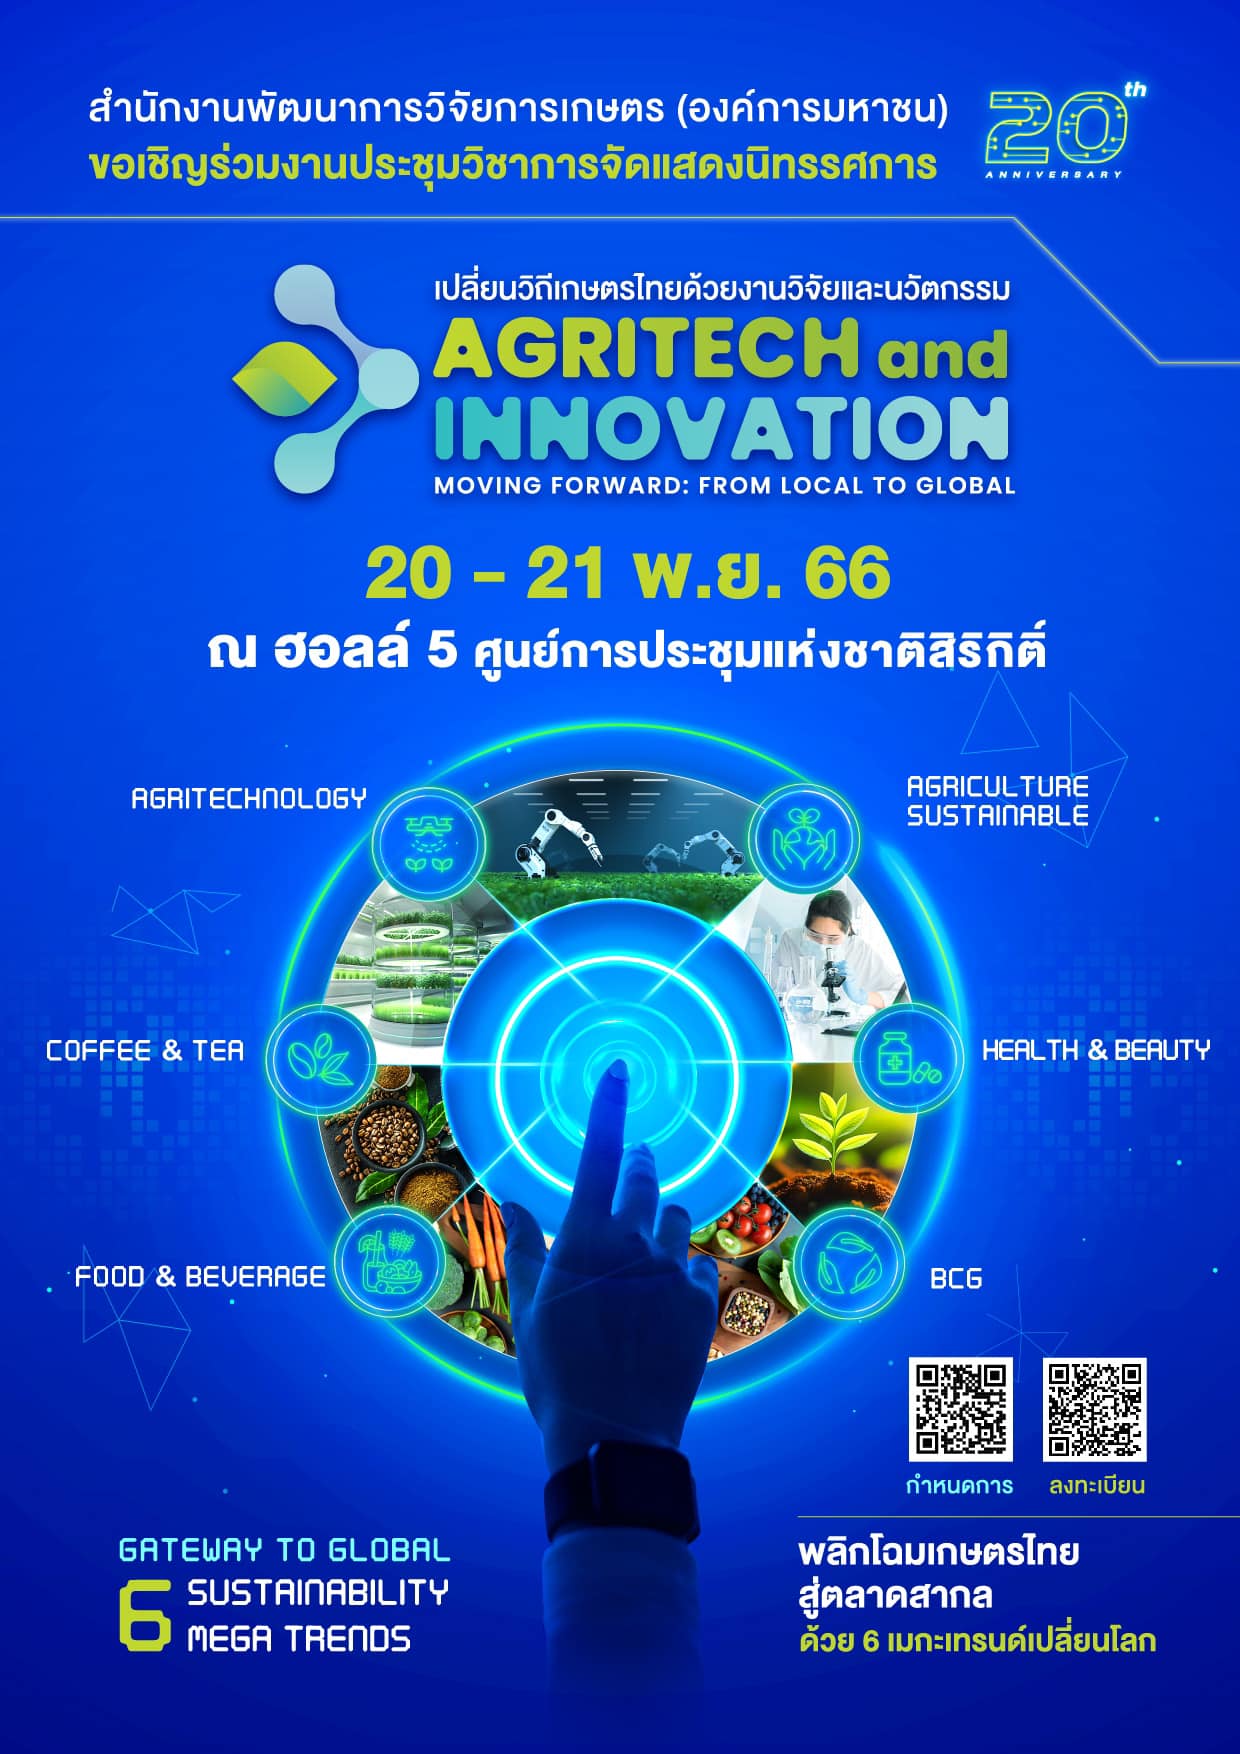 เปลี่ยนวิถีเกษตรไทย ด้วยงานวิจัยและนวัตกรรม